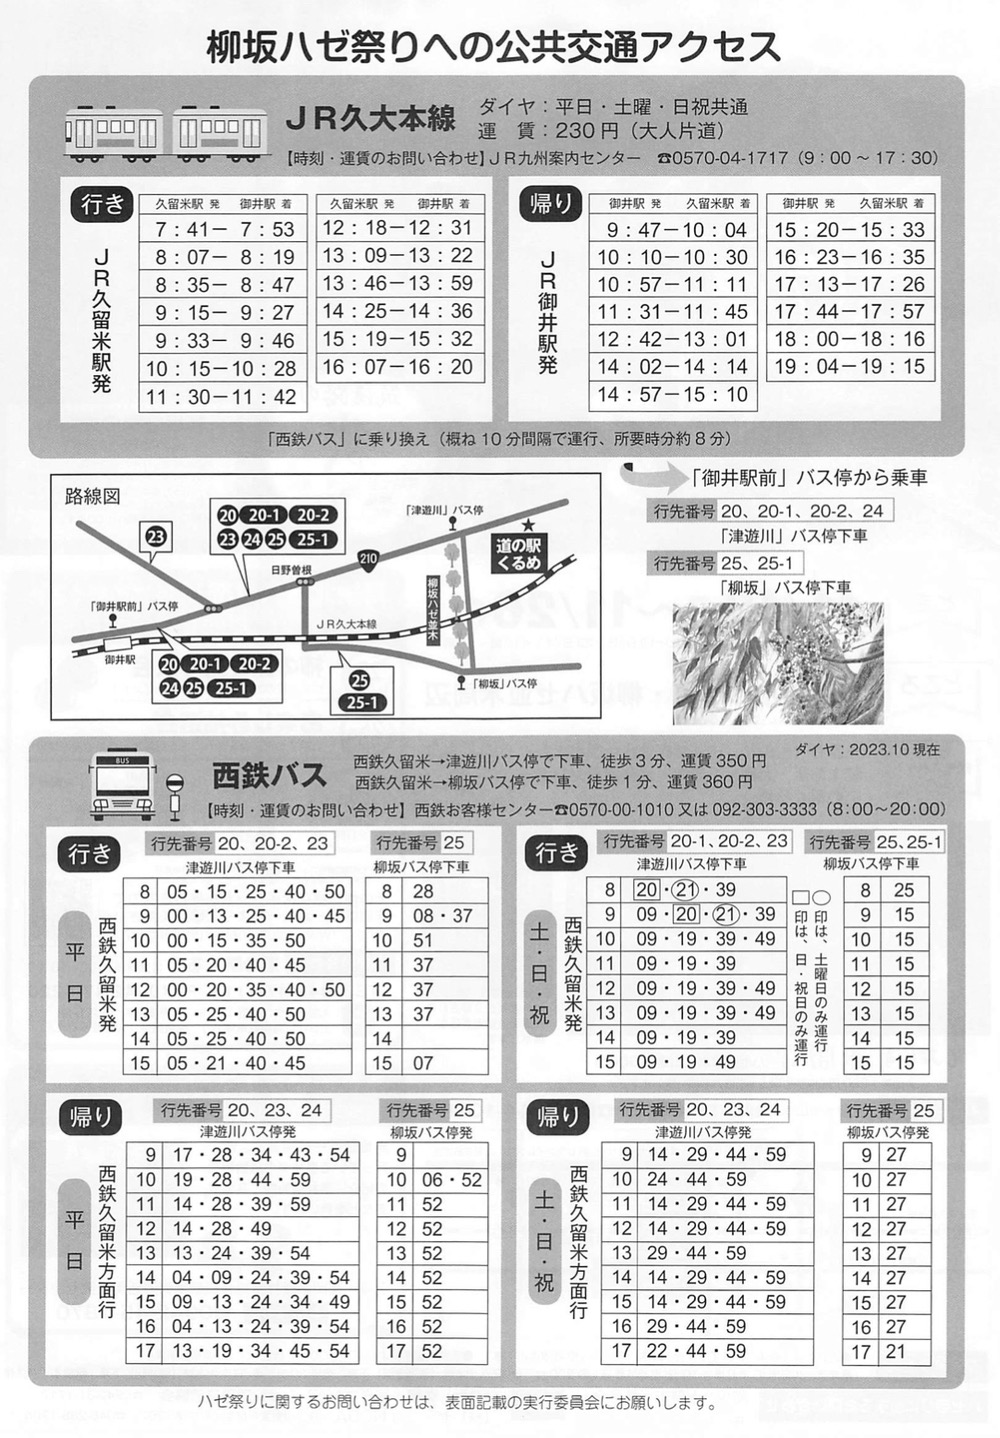 柳坂ハゼ祭りへの公共交通アクセス